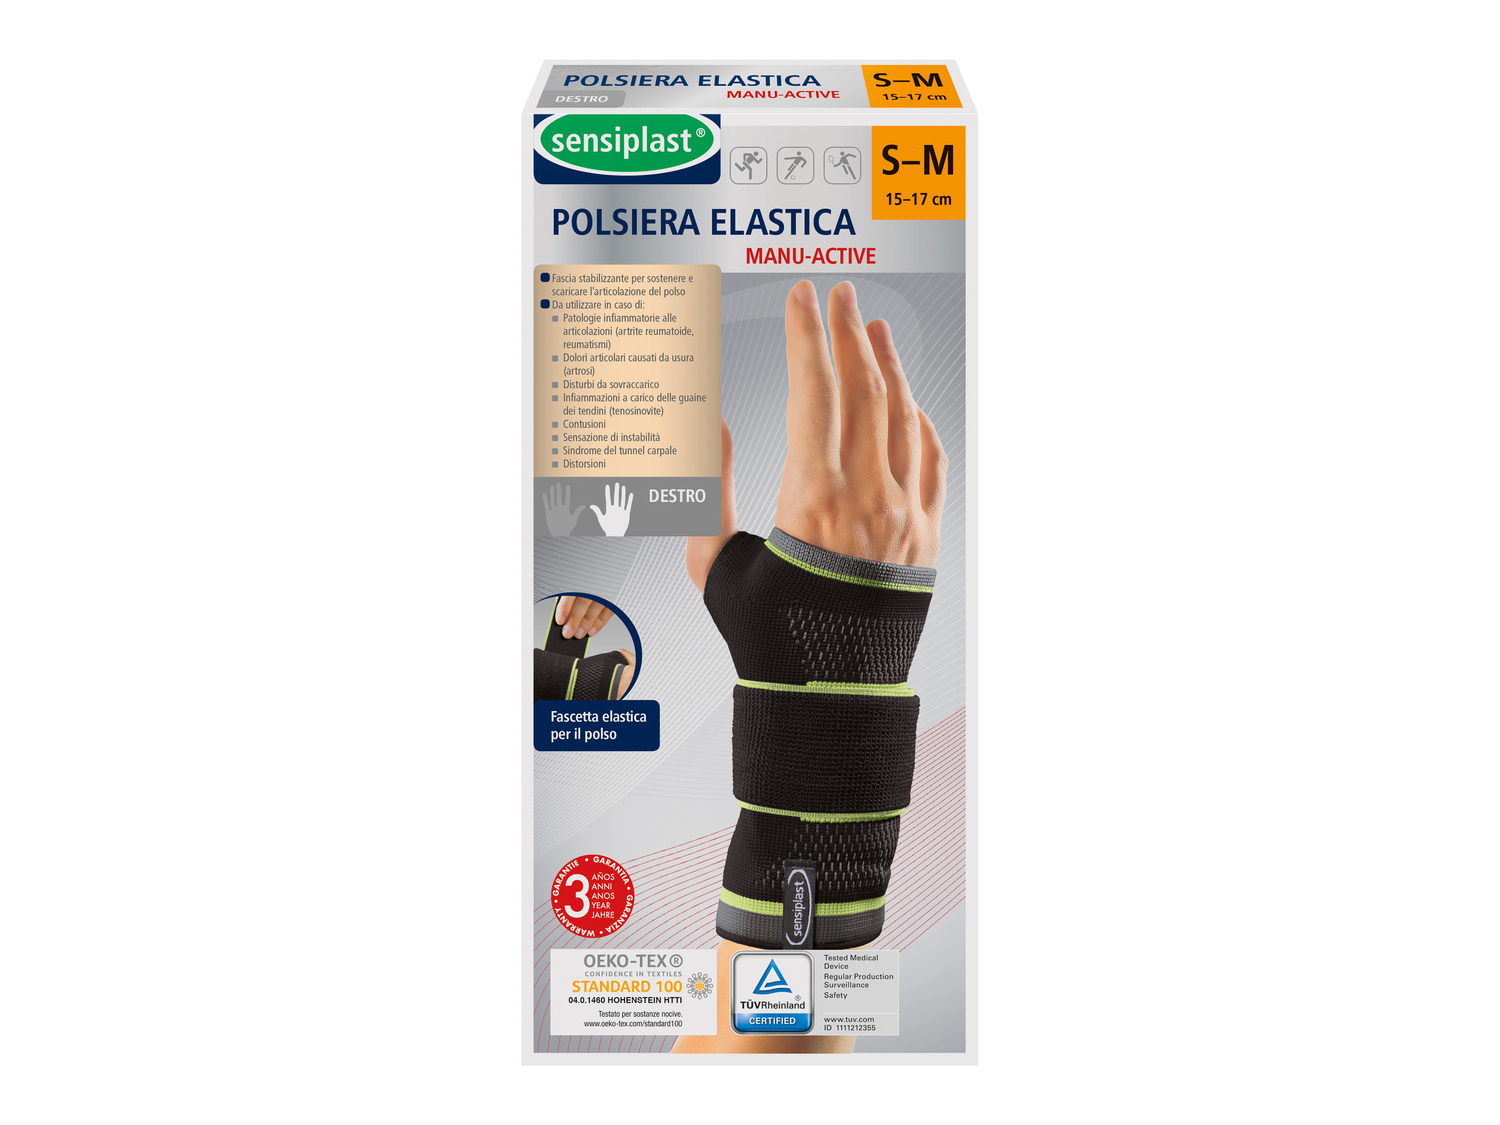 Polsiera elastica Sensiplast, prezzo 6.99 € 
- Fascia stabilizzante per sostenere ...